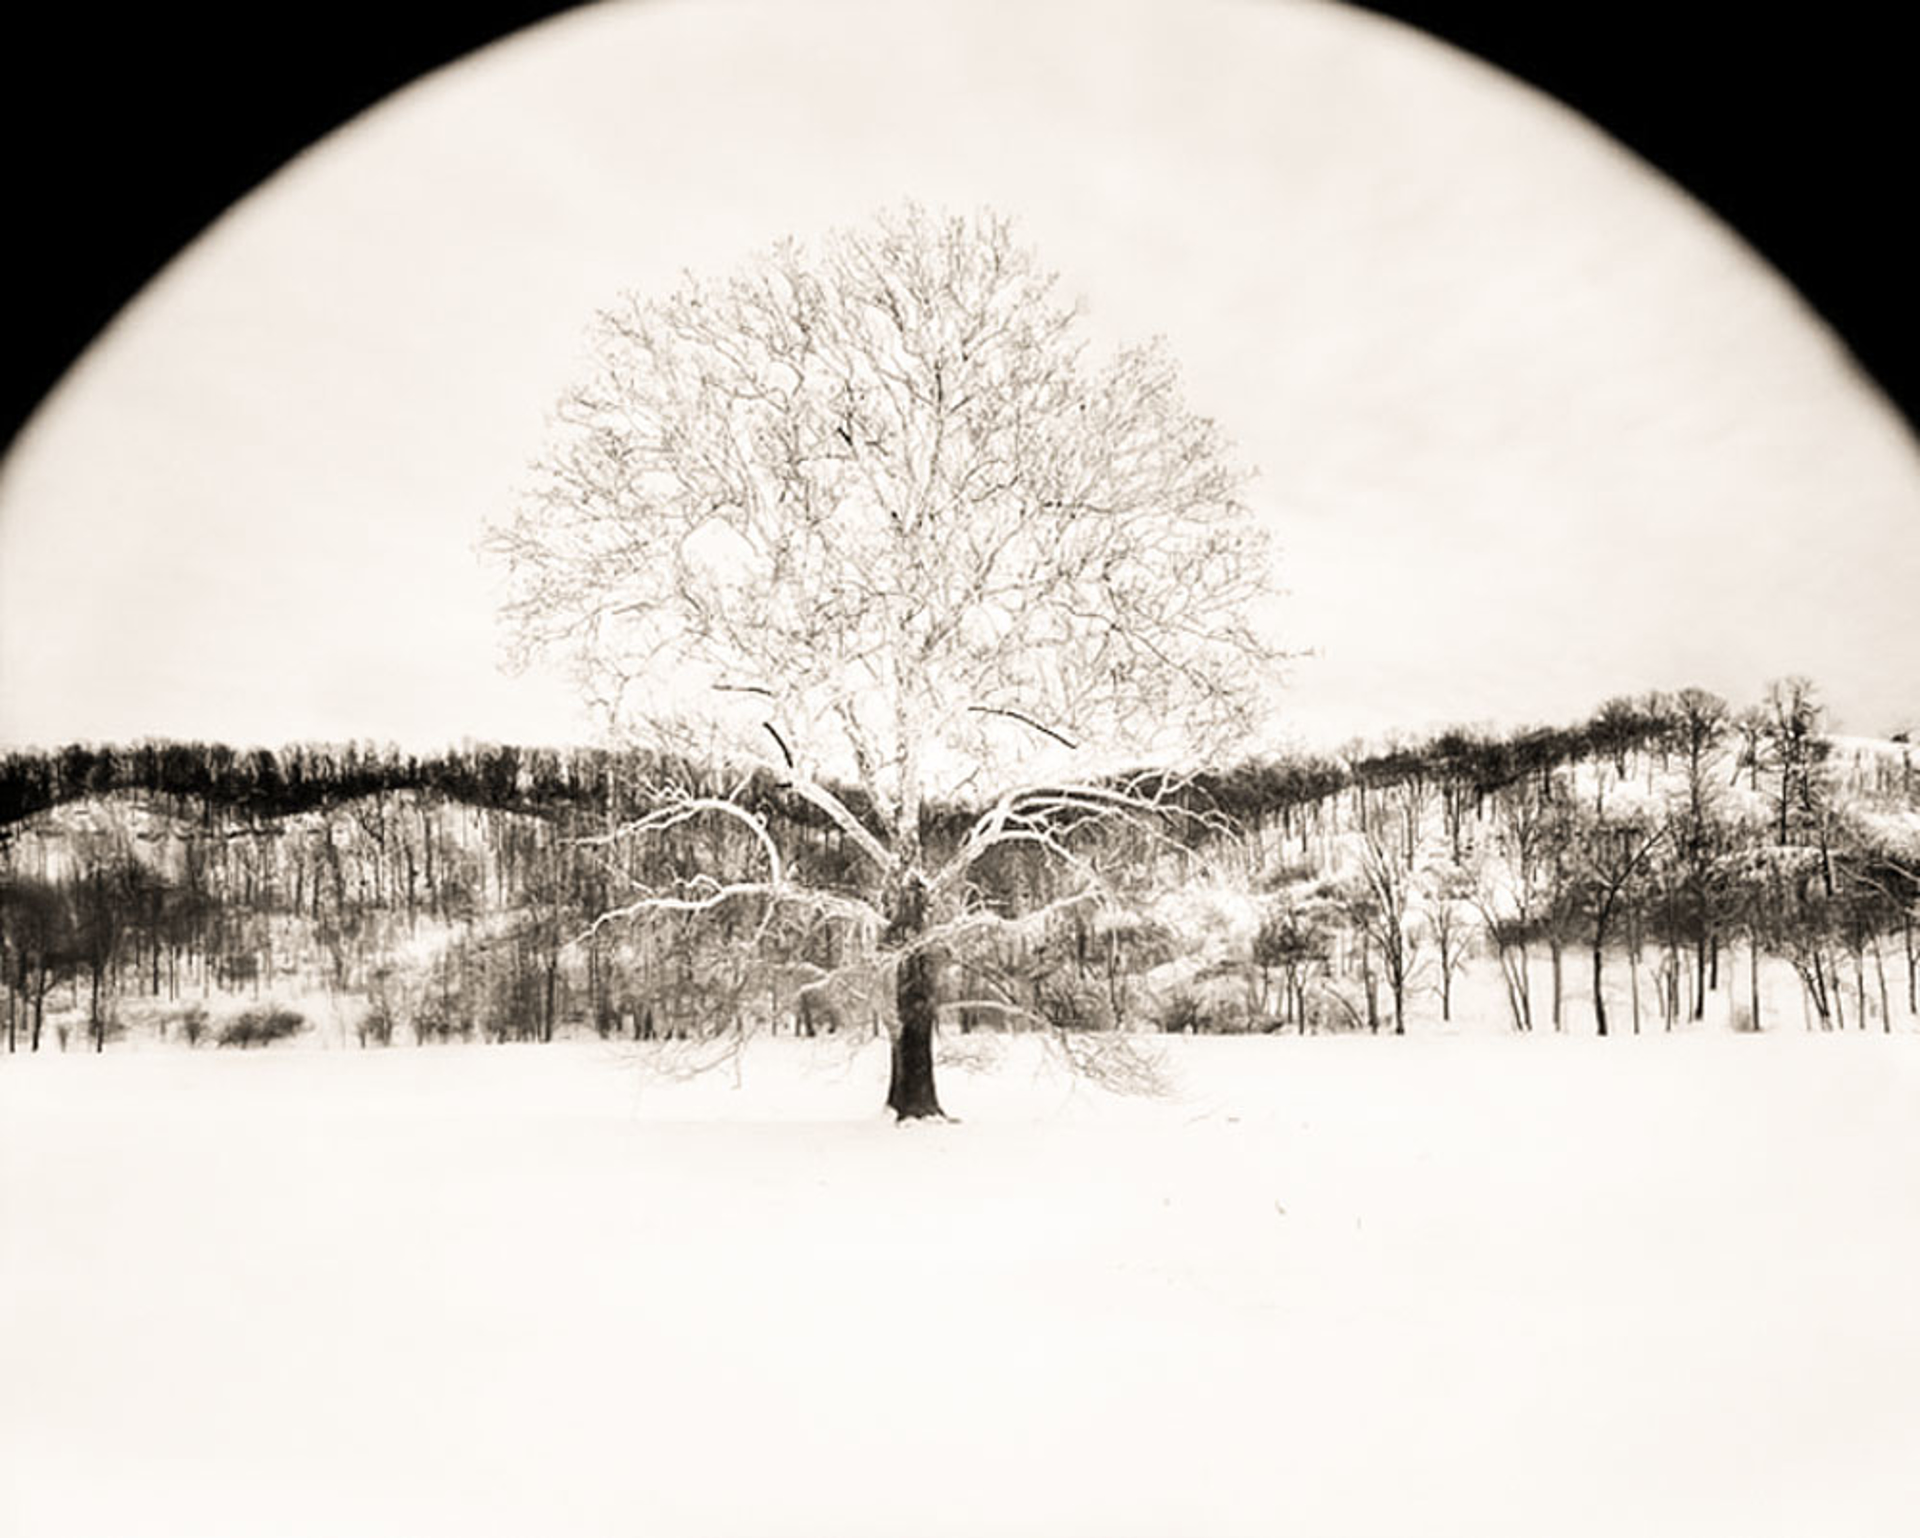 Tree in Winter (1/34) by Frank Hunter